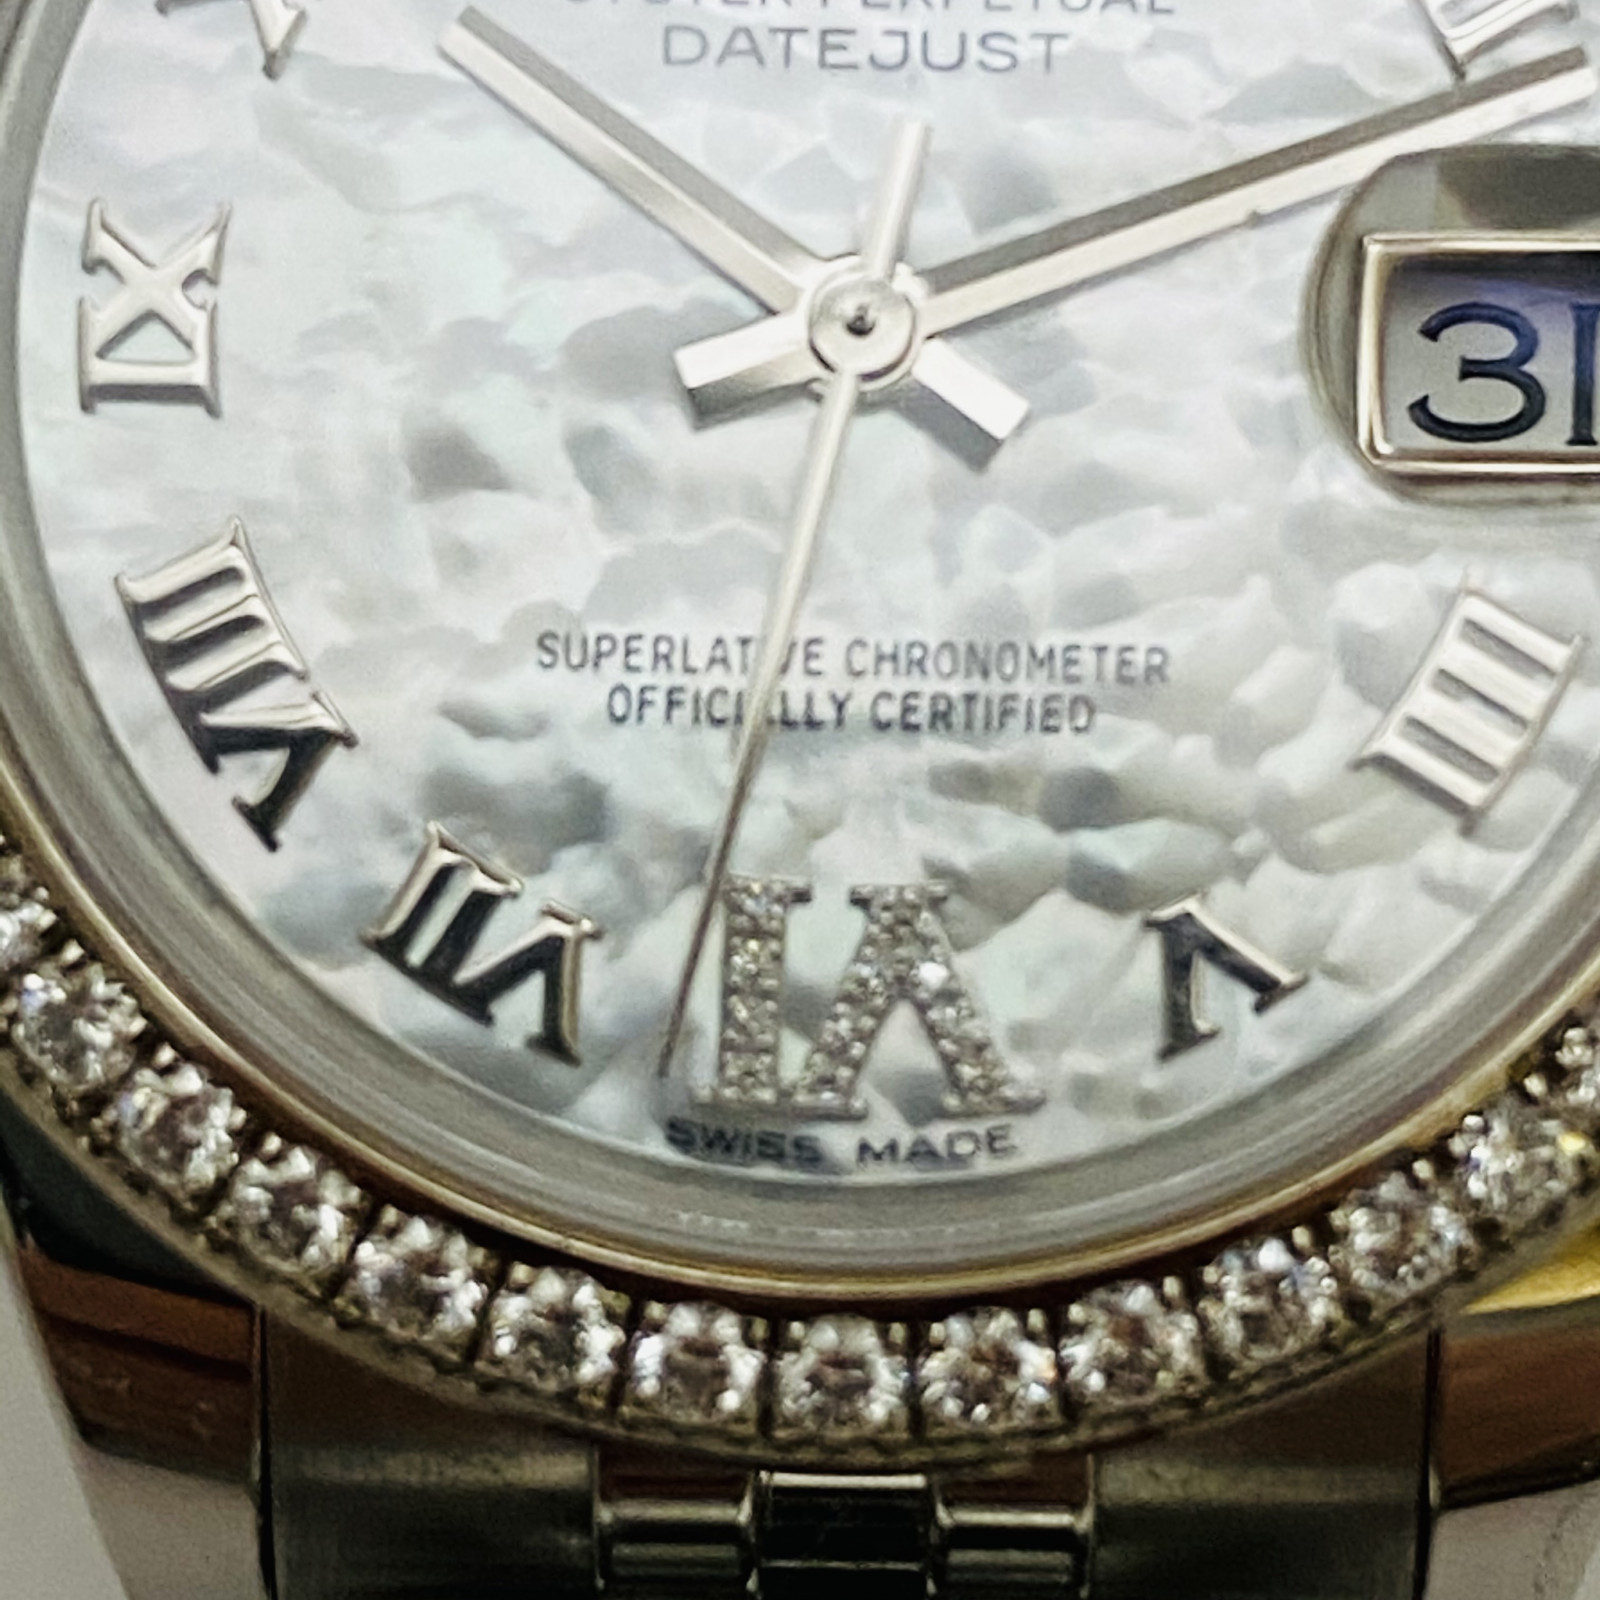 Rolex Mid-Size Ladies Diamond Watch 178384 Unworn 2020